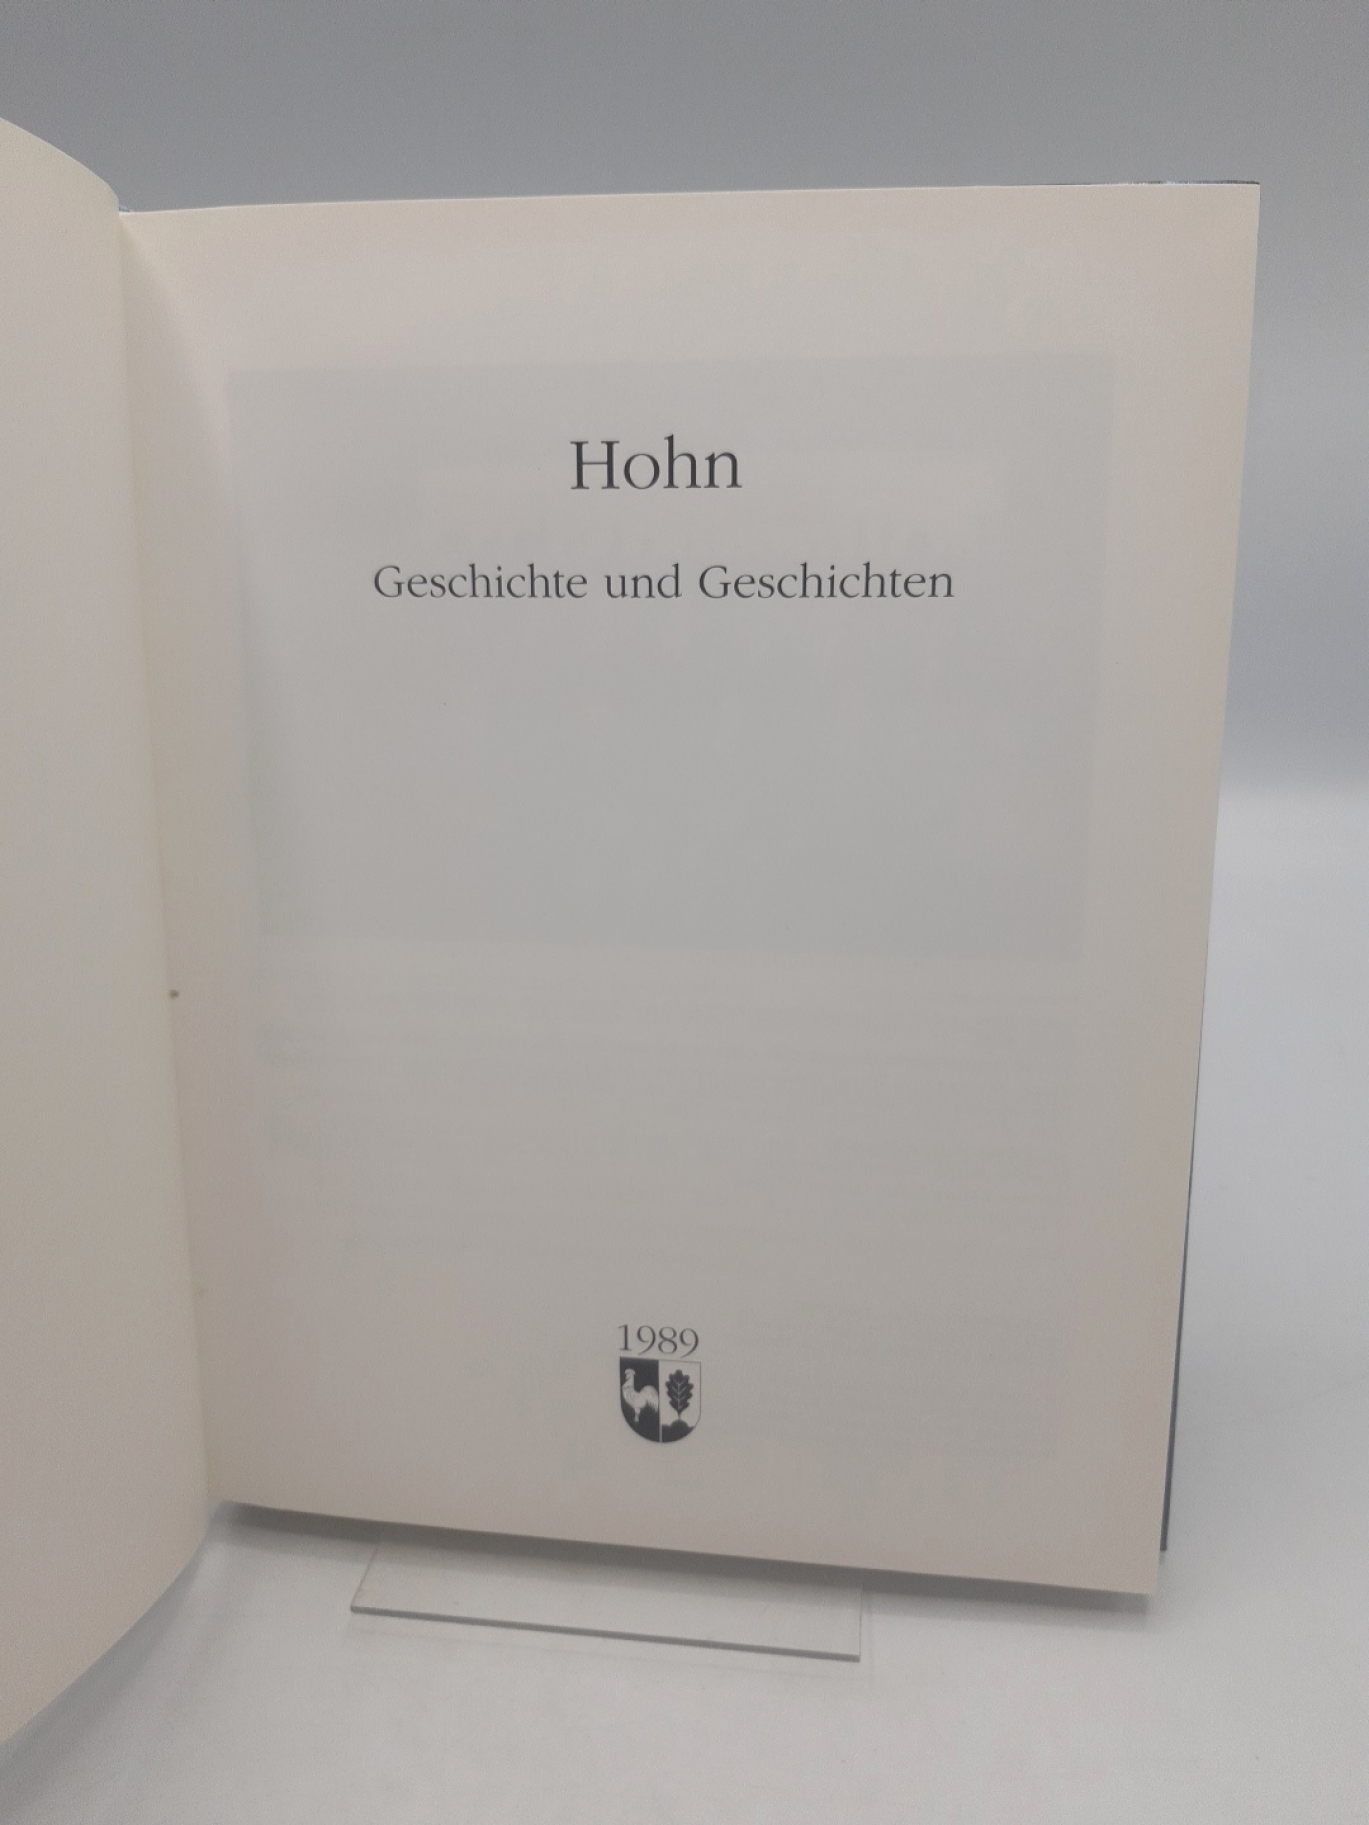 Arbeitskreis Hohner Chronik (Hrsg.):  Hohn. Geschichte und Geschichten